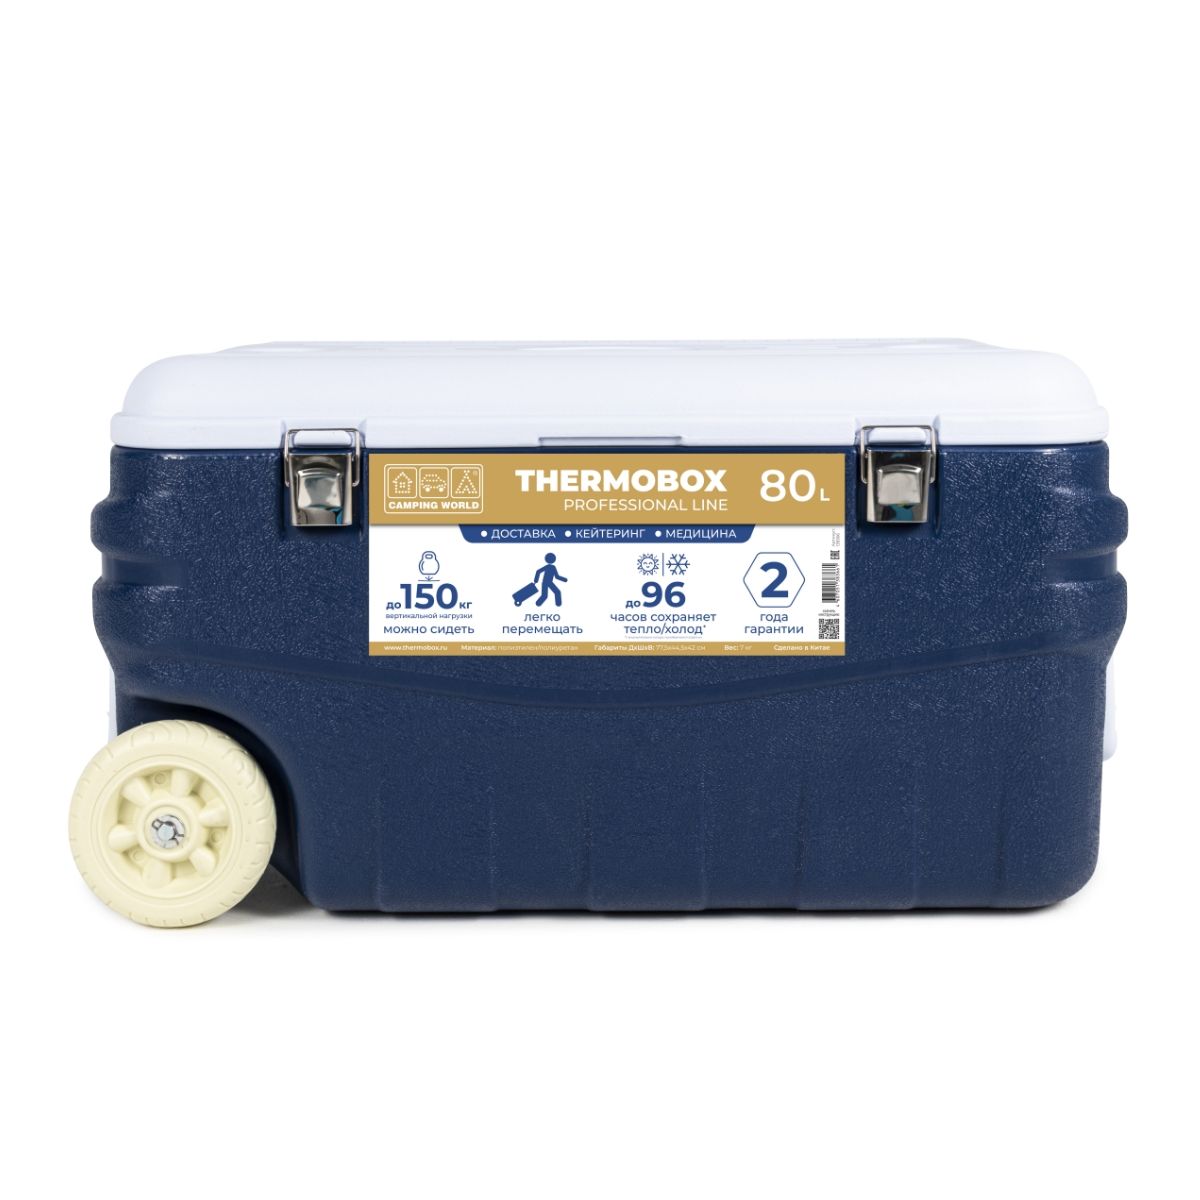 Термоконтейнер пластиковый на колесах Thermobox Camping World Professional Line, 80 литров